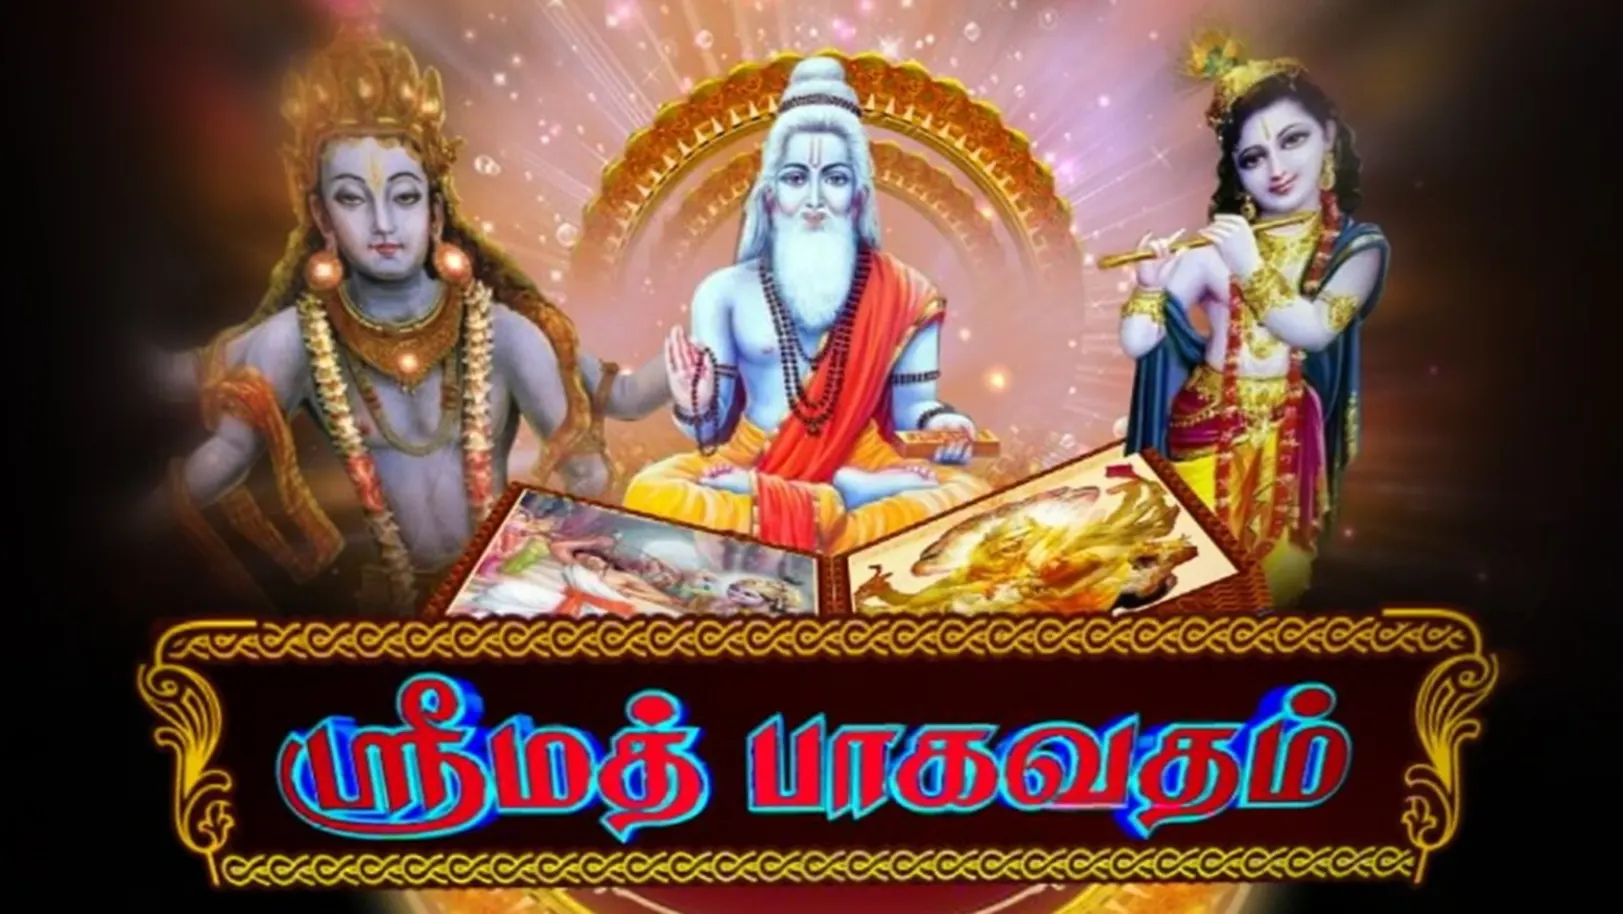 Srimad Bhagavatham Streaming Now On Aastha Tamil